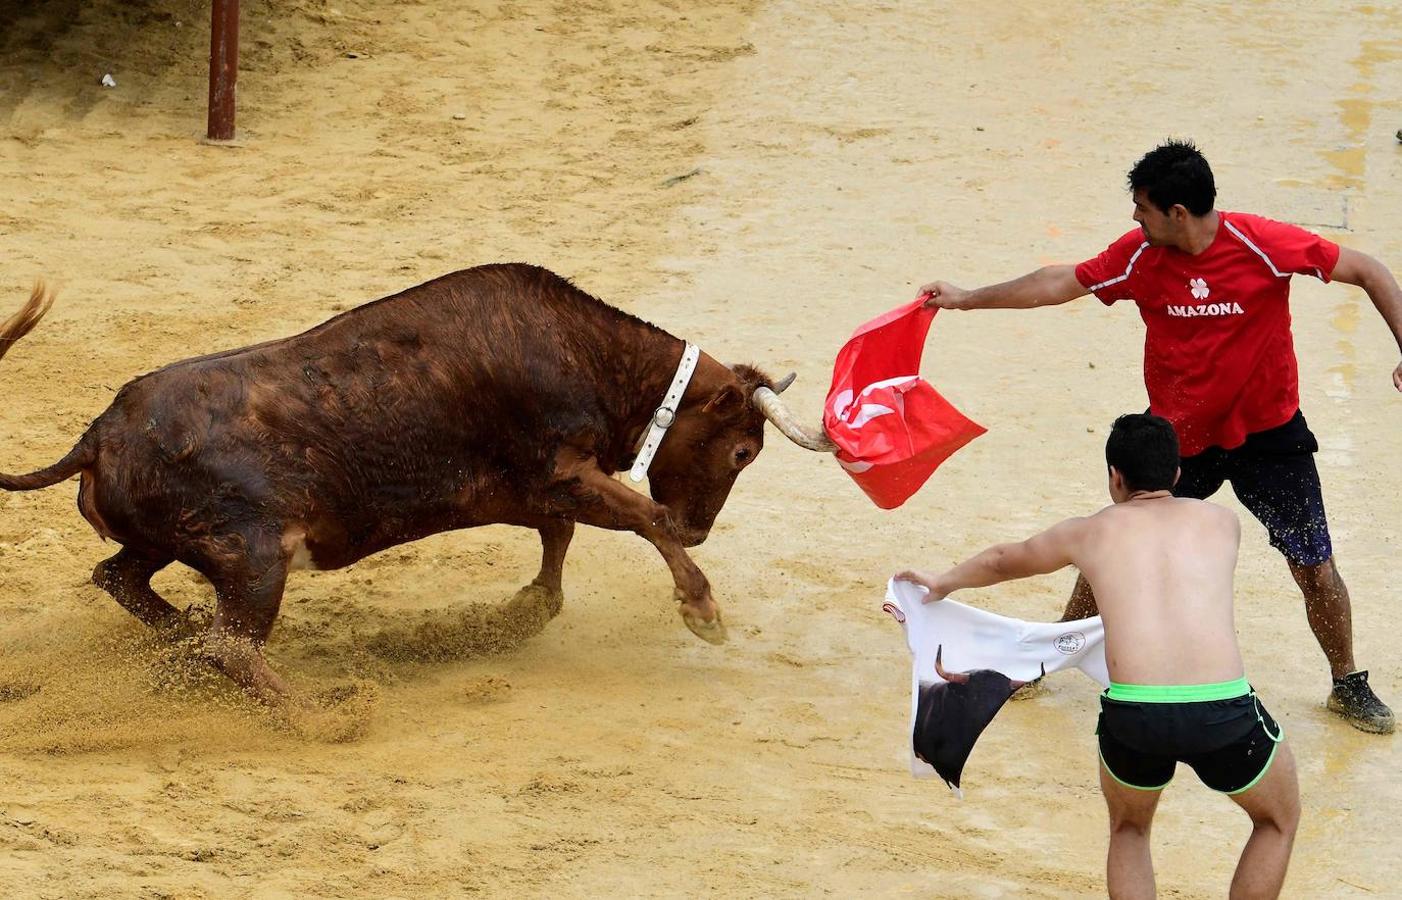 Las actividades durante la corrida tradicional de toros «Bous a la mar»(toros en el mar) en el puerto de Denia, cerca de Alicante, el 8 de julio de 2019. 